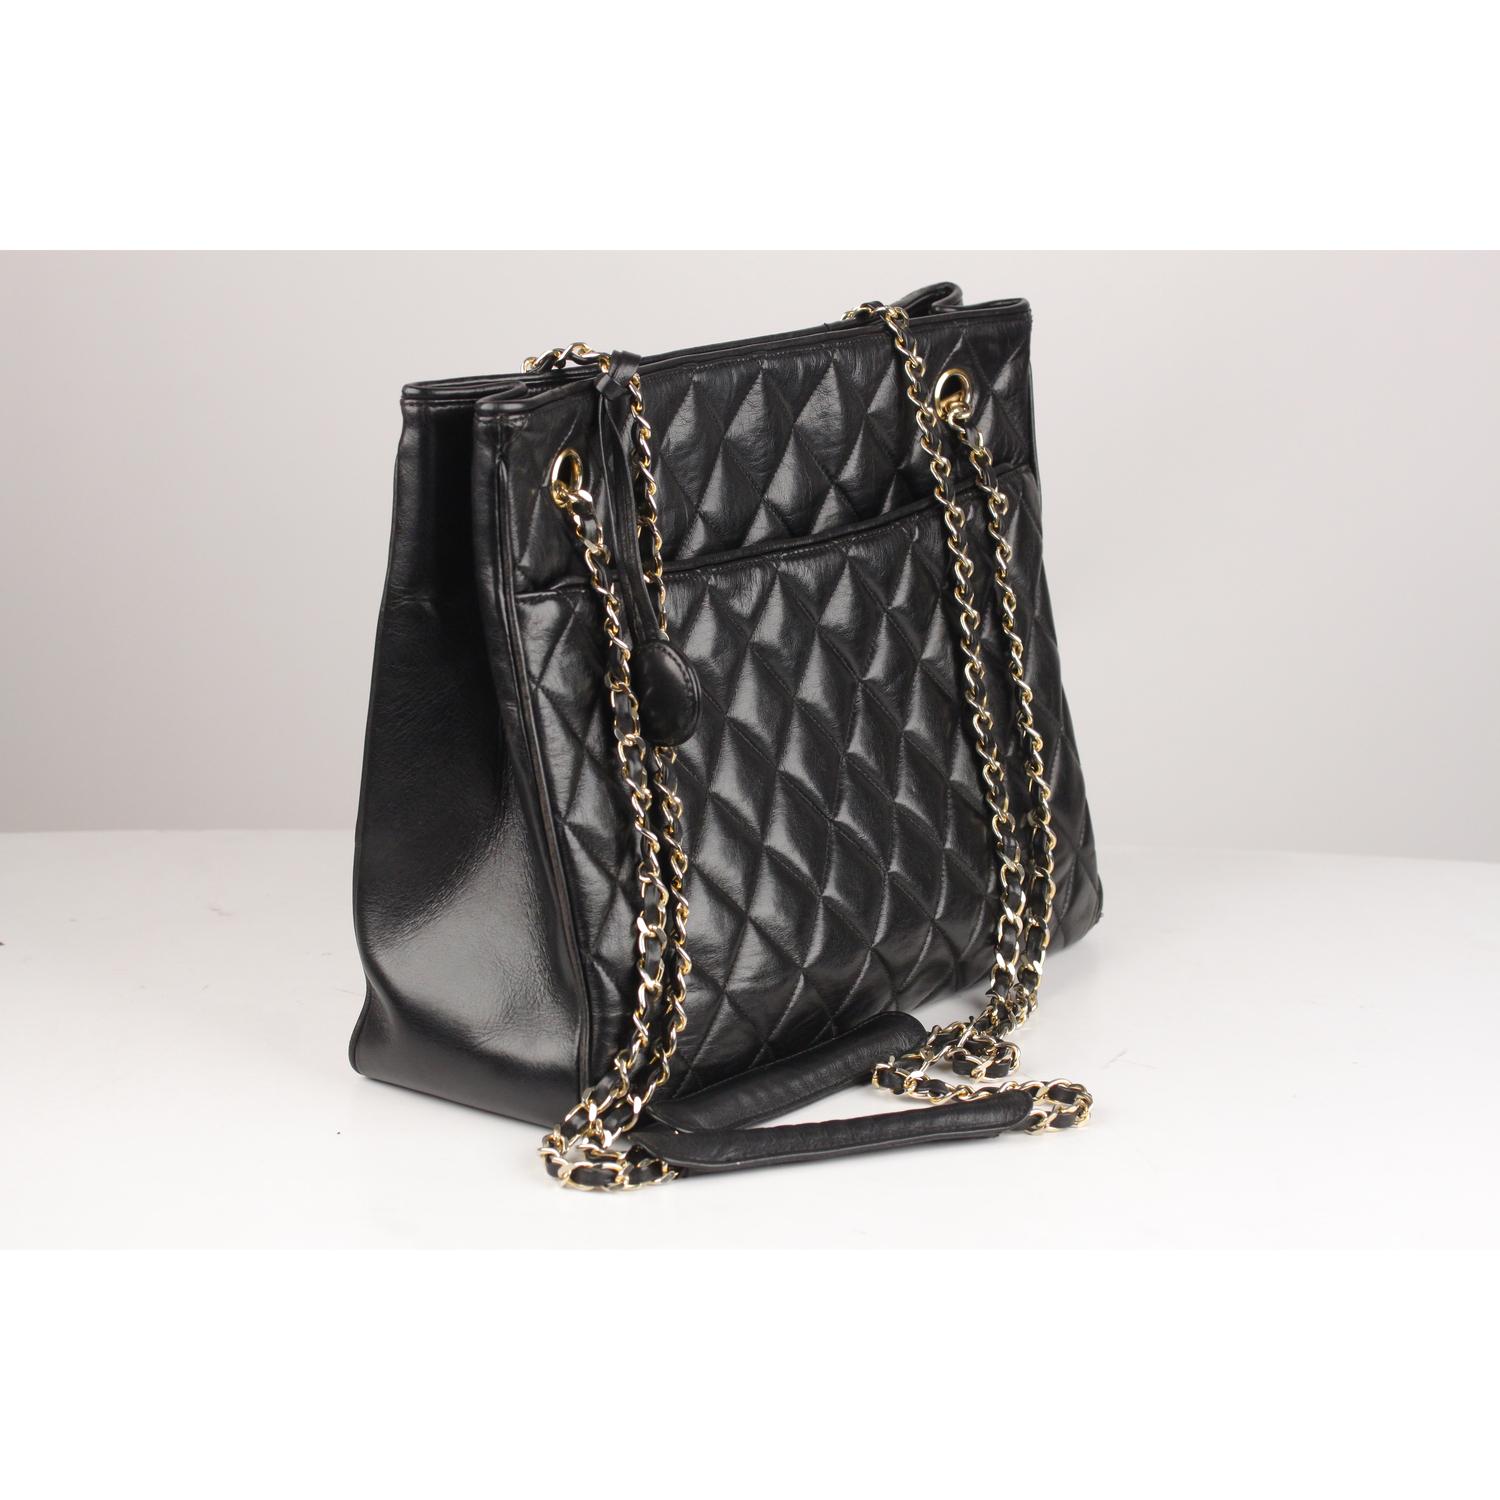 Women's Chanel Vintage Black Quilted Leather Shoulder Bag Tote